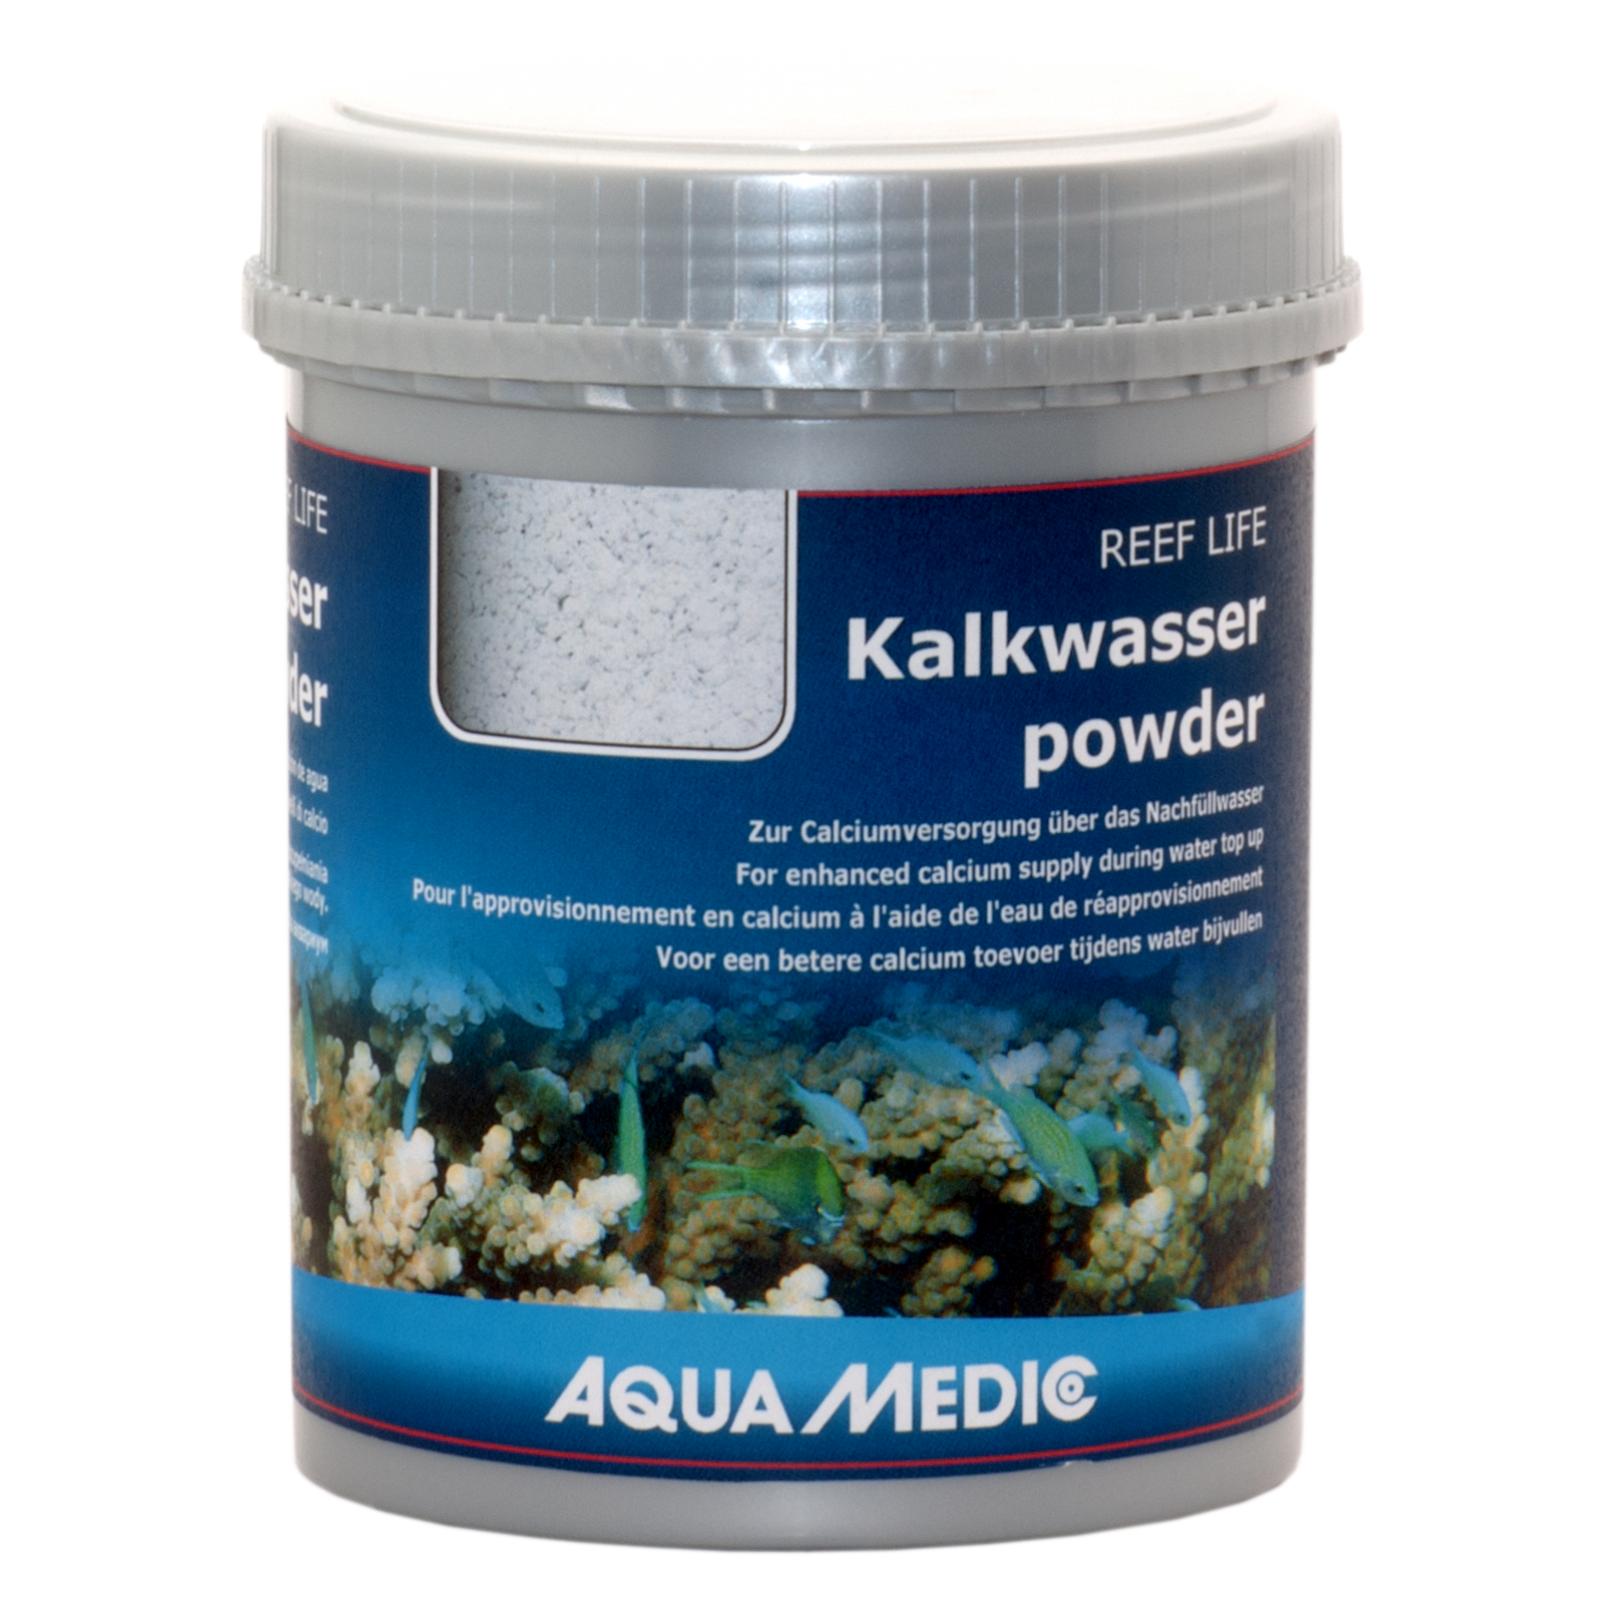 Гідроксид кальцію Aqua Medic REEF LIFE Kalkwasserpowder